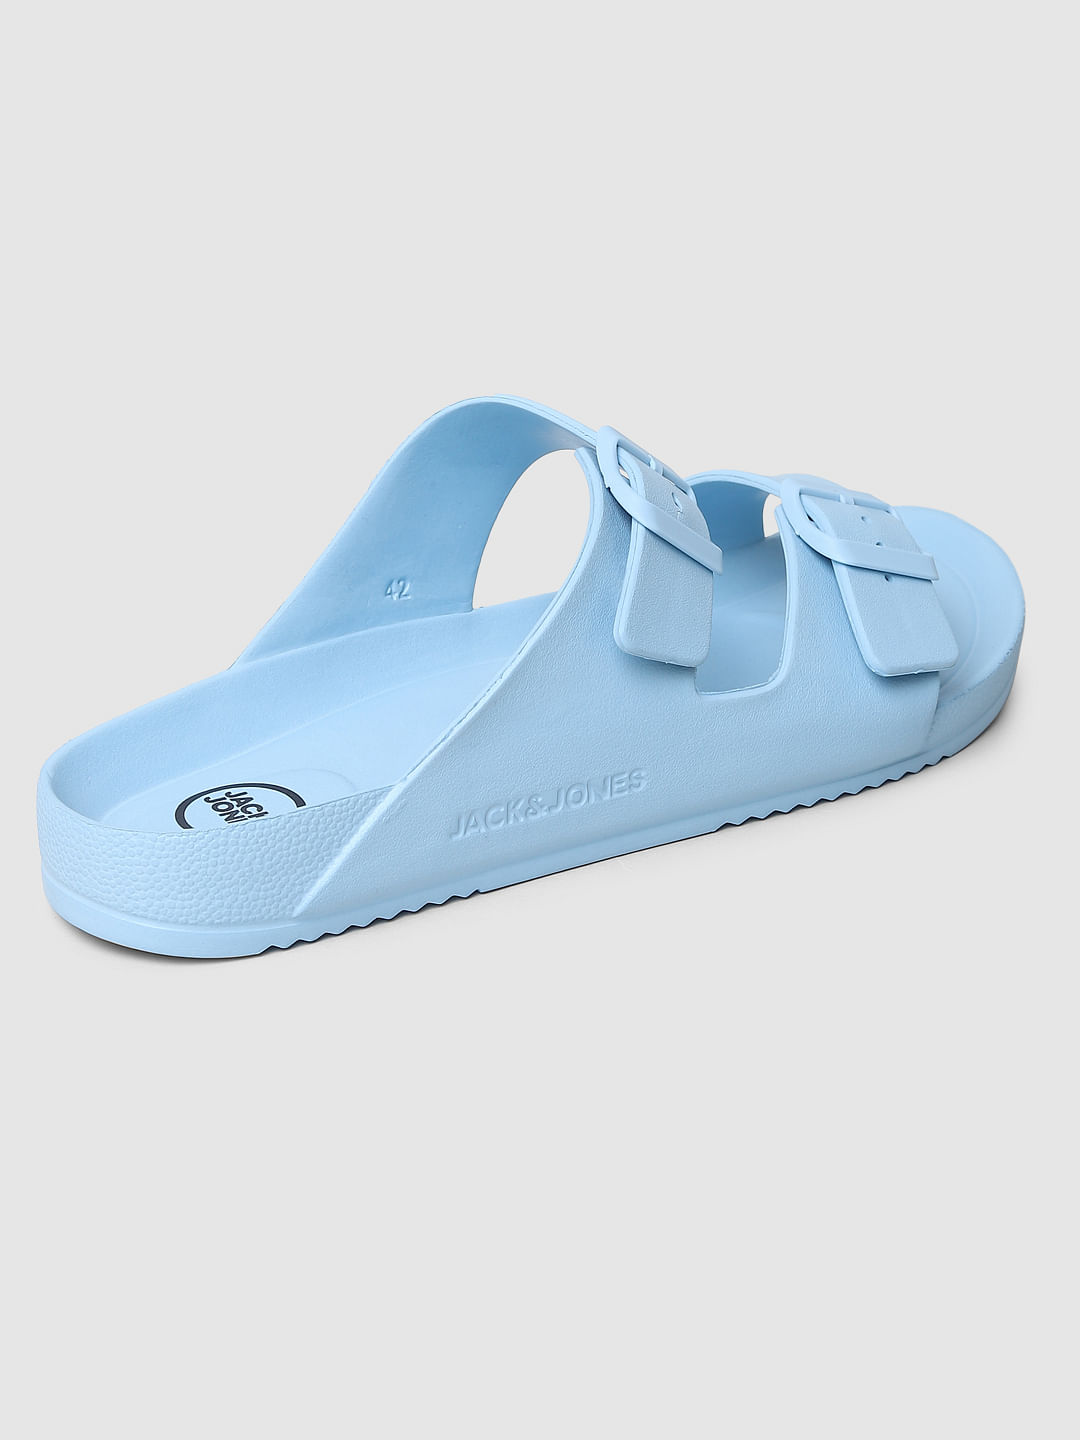 Buy Women Navy-Blue Casual Sandals Online | Walkway Shoes